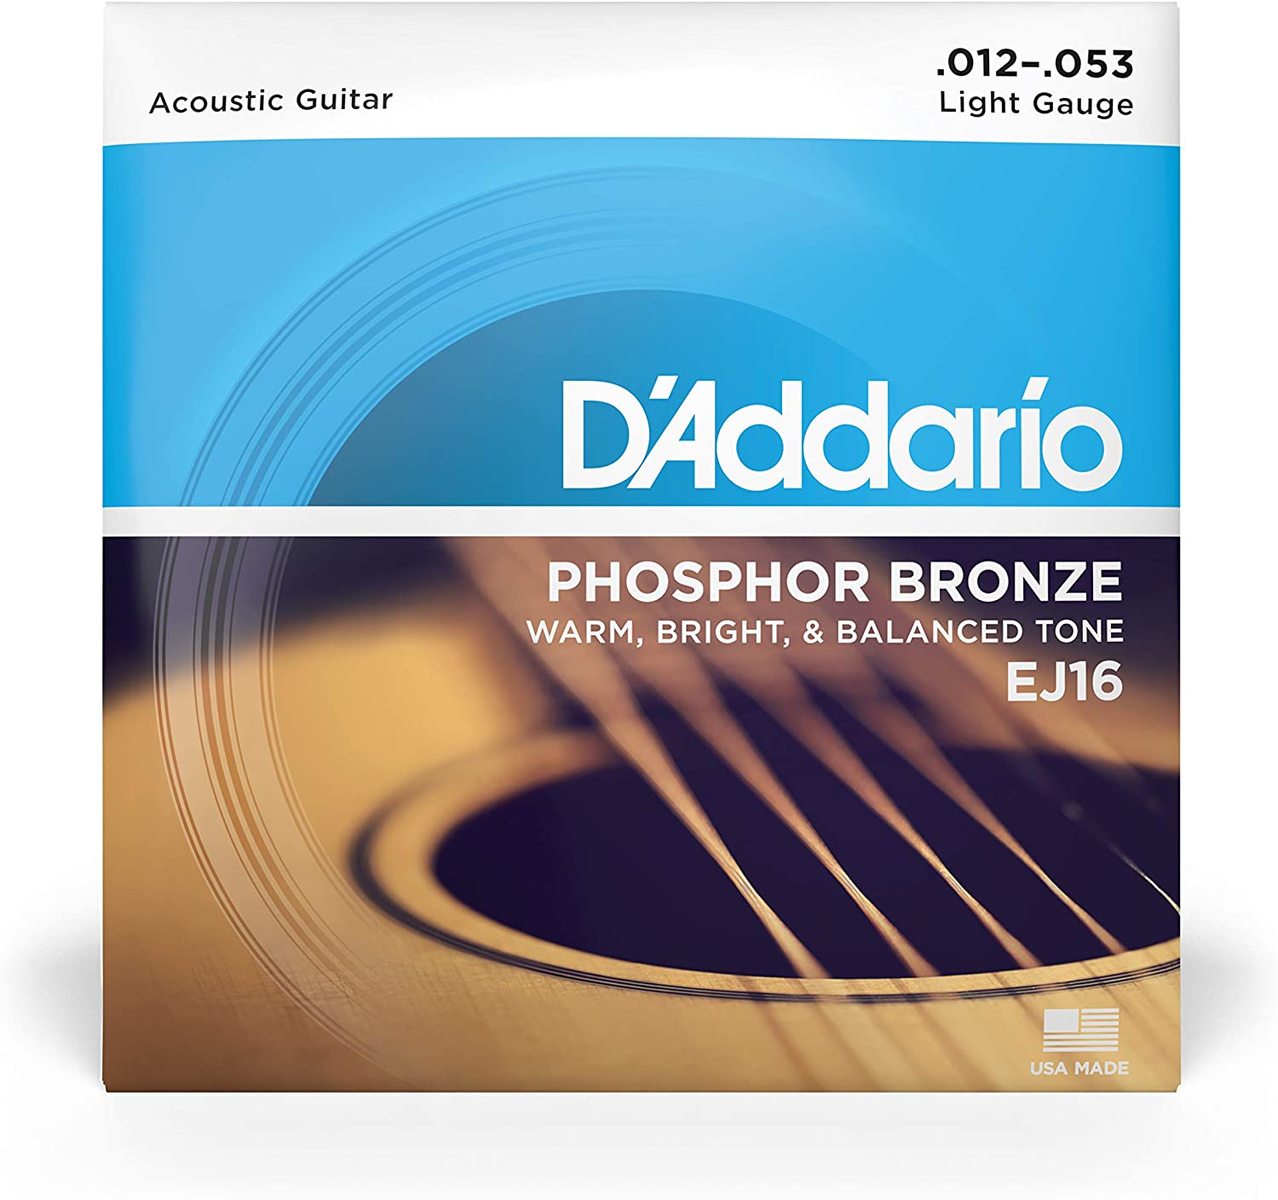 完全送料無料 D'Addario アコースティックギター弦 上品なスタイル フォスファーブロンズ Light 送料無料 EJ16 .012-.053